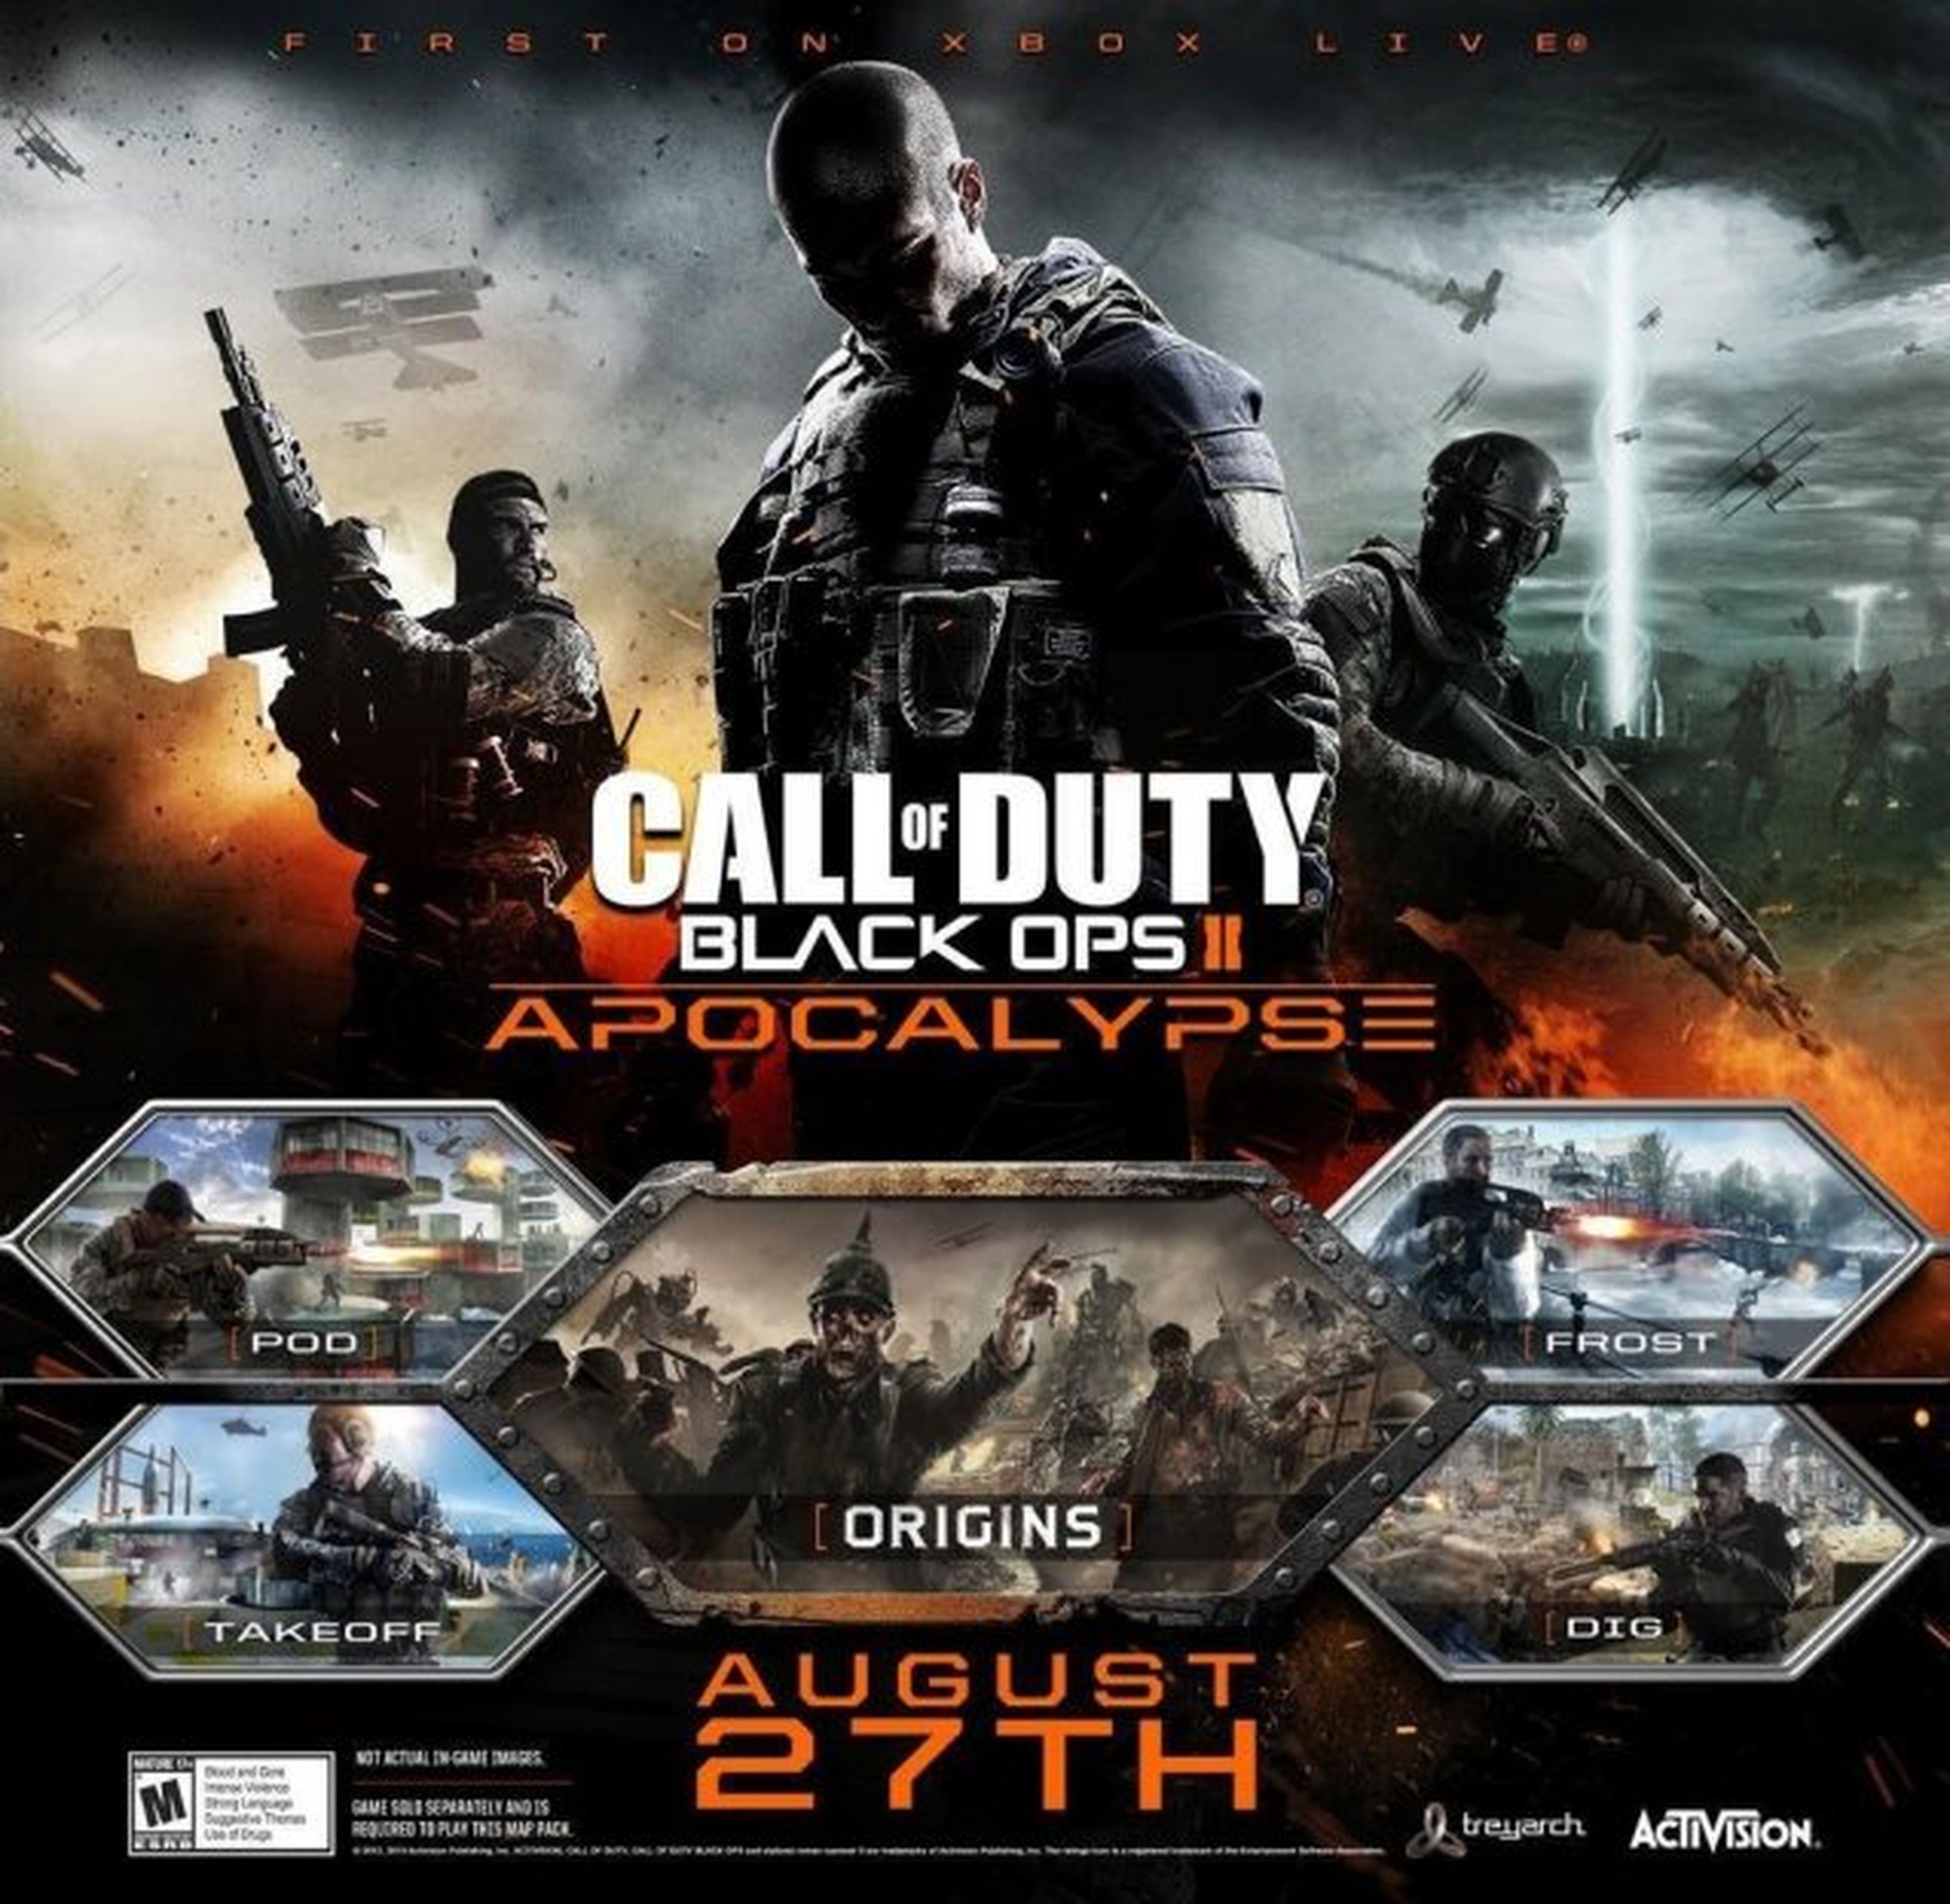 Call of Duty: Black Ops II Apocalypse Gameplay Trailer